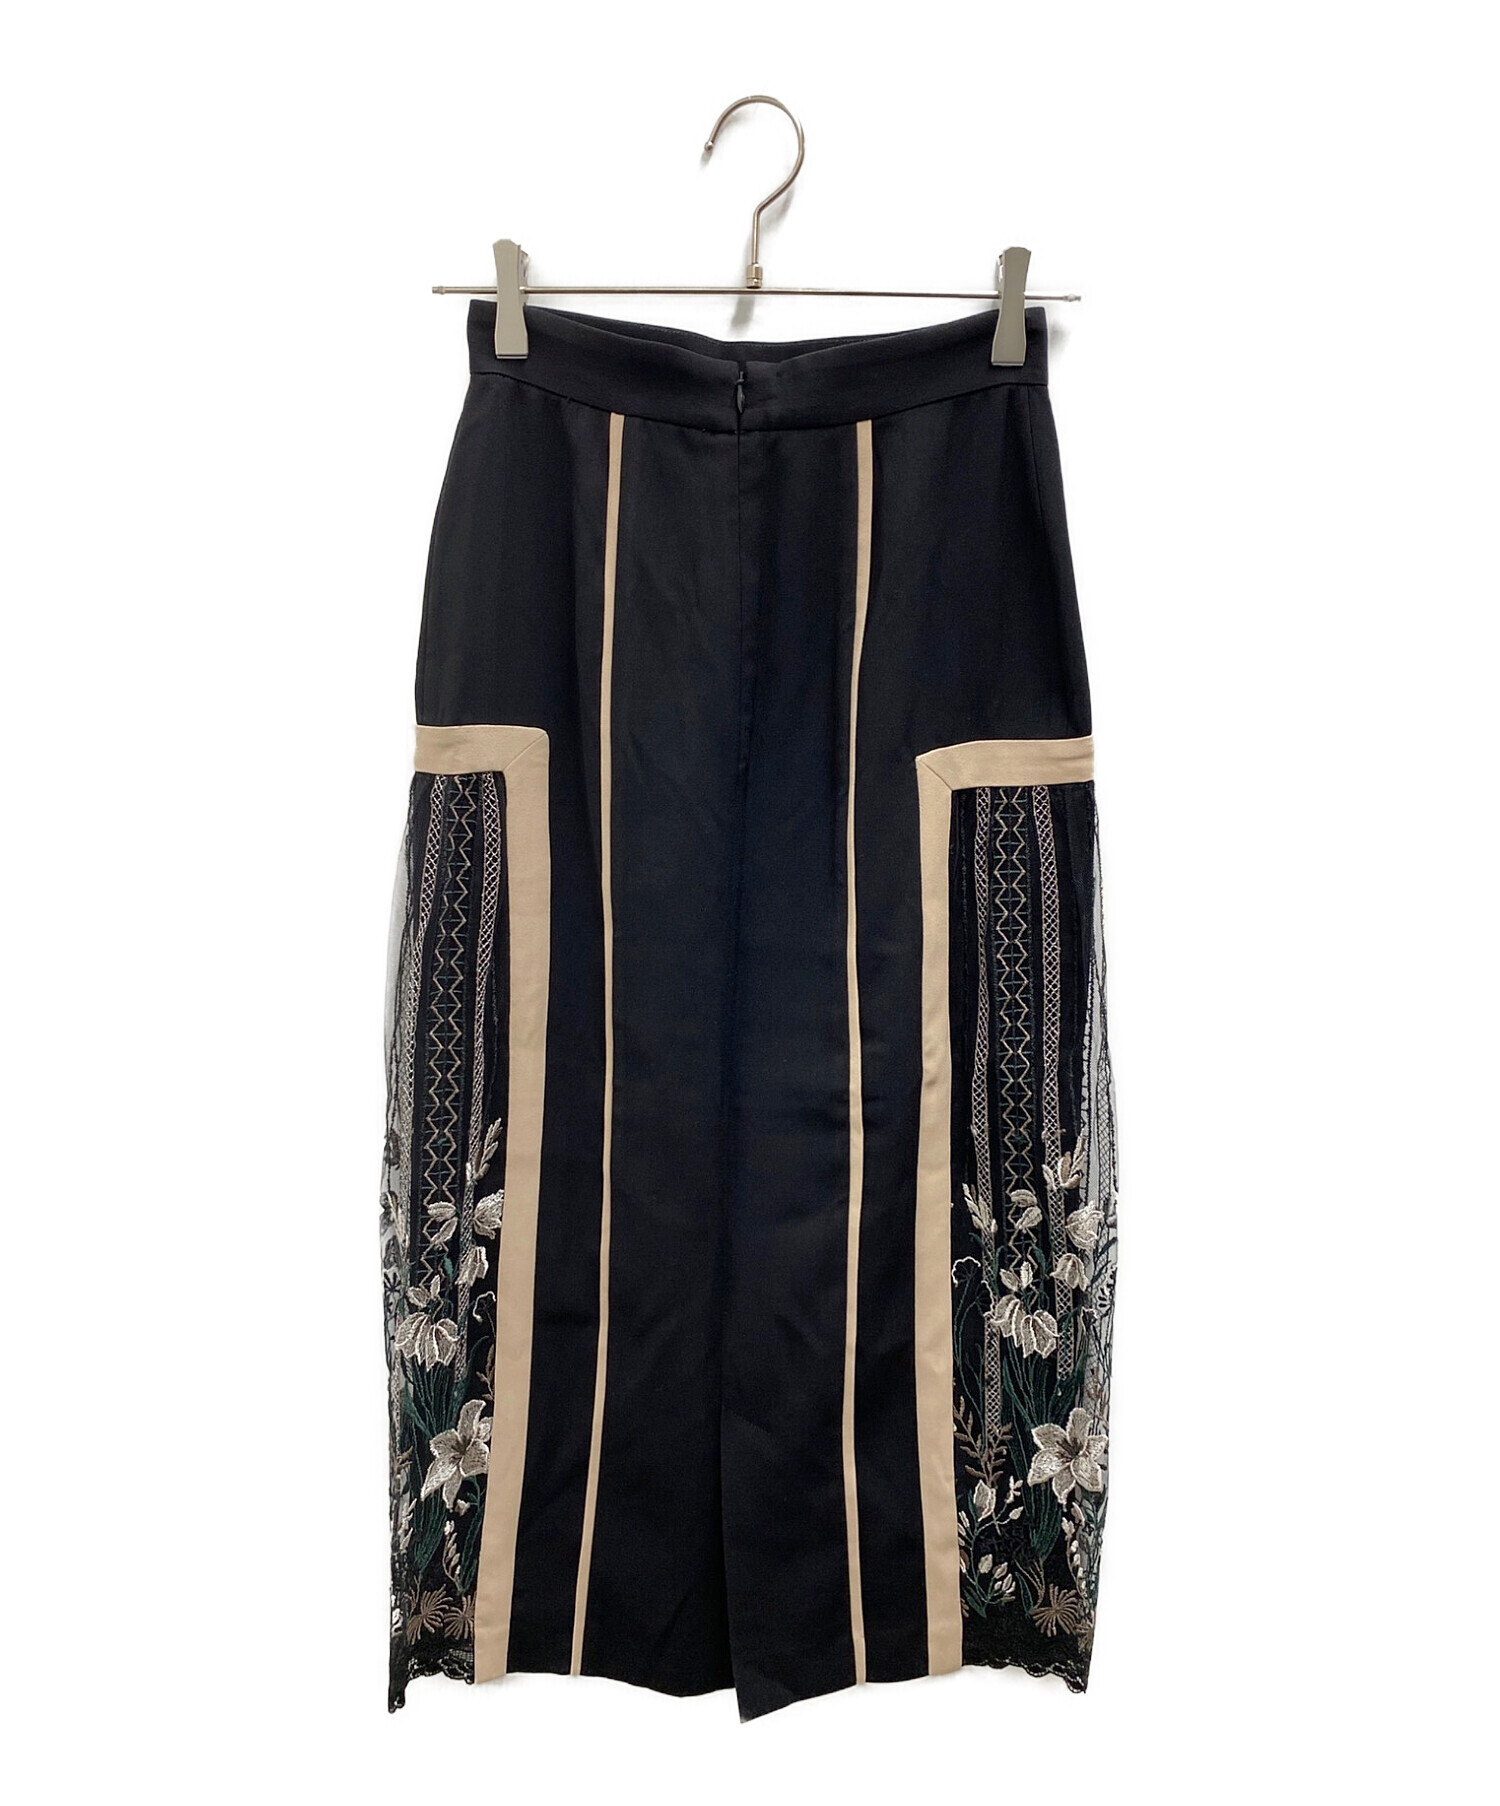 MURRAL (ミューラル) Framed flower skirt ブラック